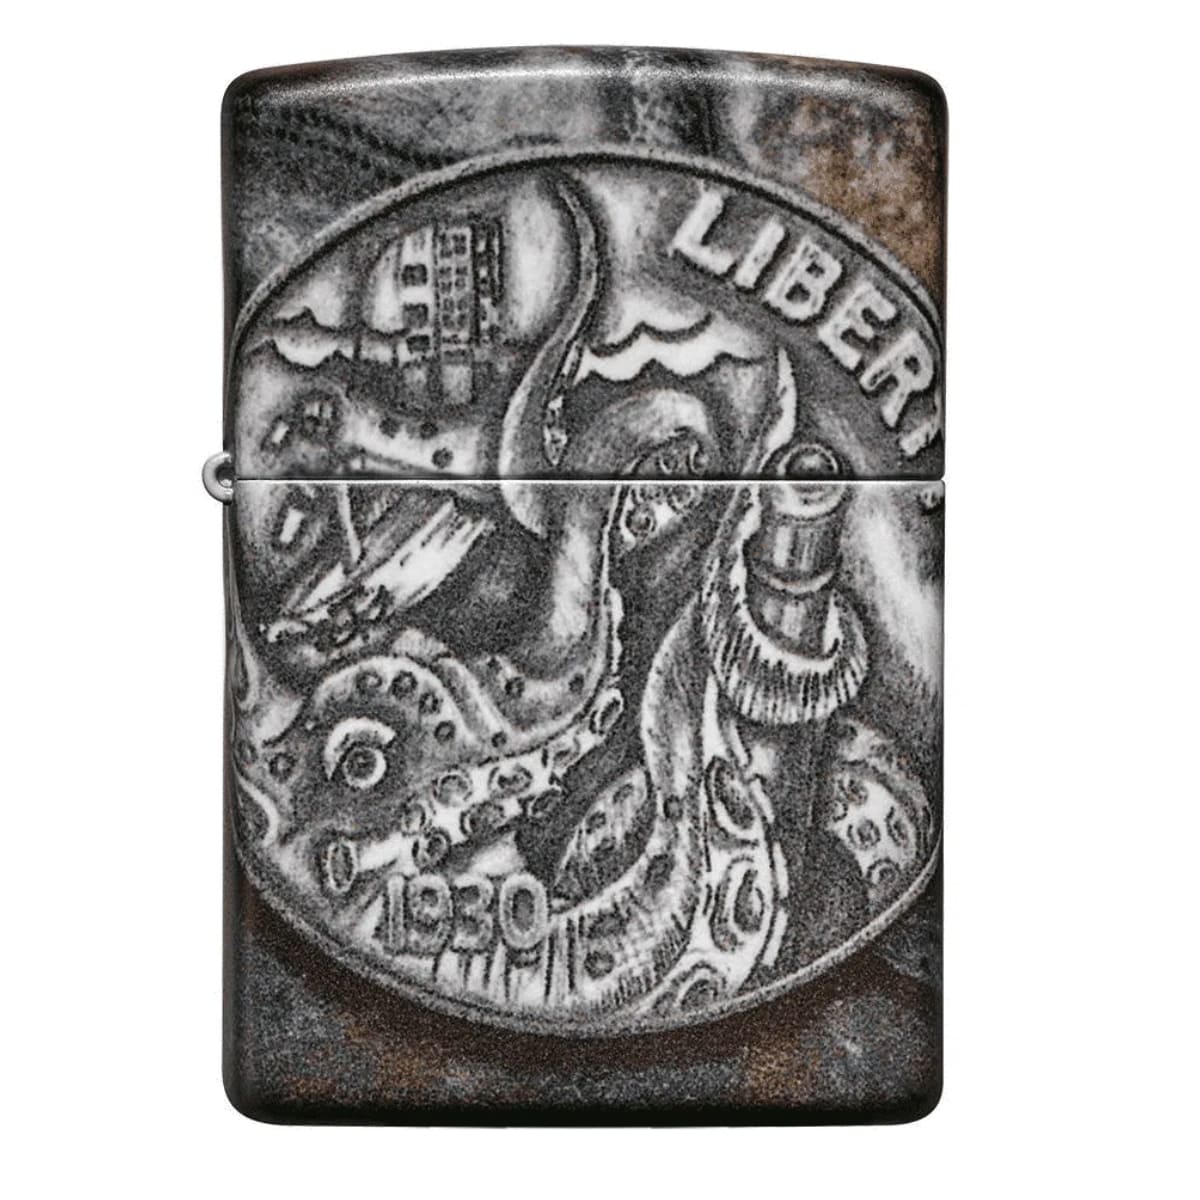 Isqueiro Zippo Pirate Coin Design - 49434